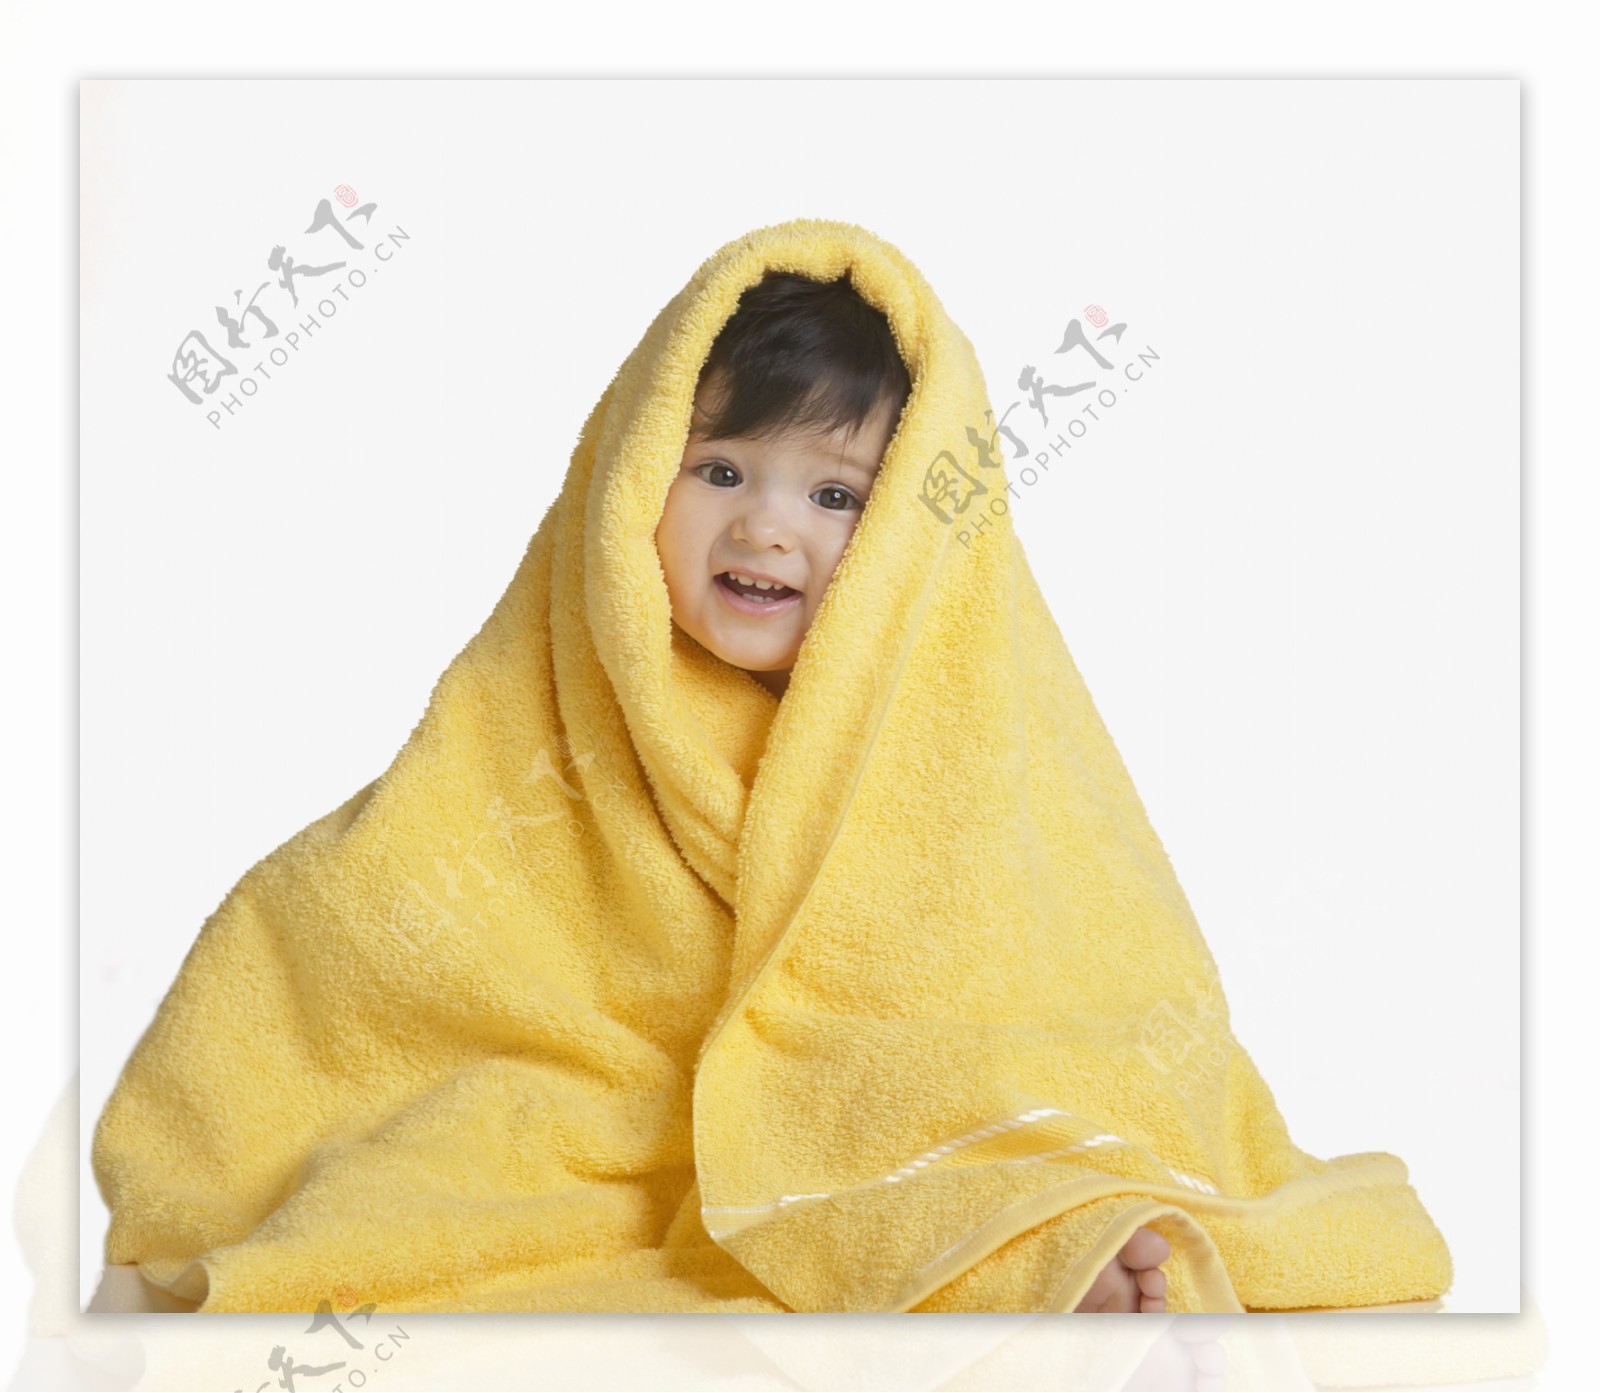 毛巾包着的可爱宝宝婴儿图片